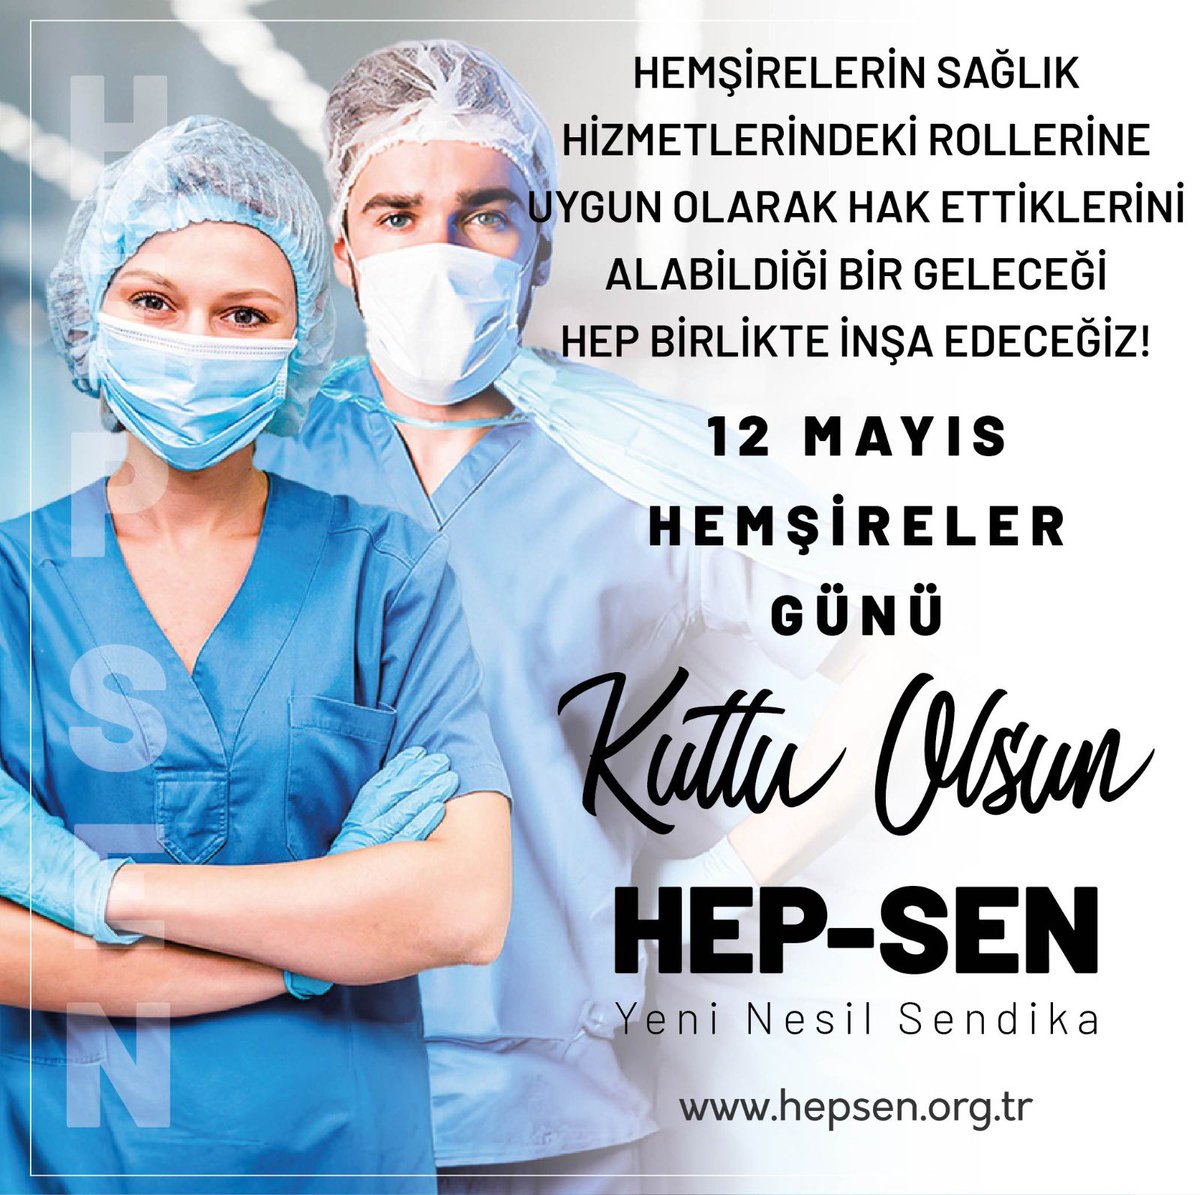 Hemşirelerin sağlık hizmetlerindeki rollerine uygun olarak hak ettiklerini alabildiği bir geleceği Hep birlikte inşa edeceğiz! 12 Mayıs Hemşireler Günü Kutlu Olsun. HEP-SEN Türkiye'nin En Genç ve Dinamik Yeni Nesil Sağlık Sendikası @hepsen_2020 🌐 hepsen.org.tr…